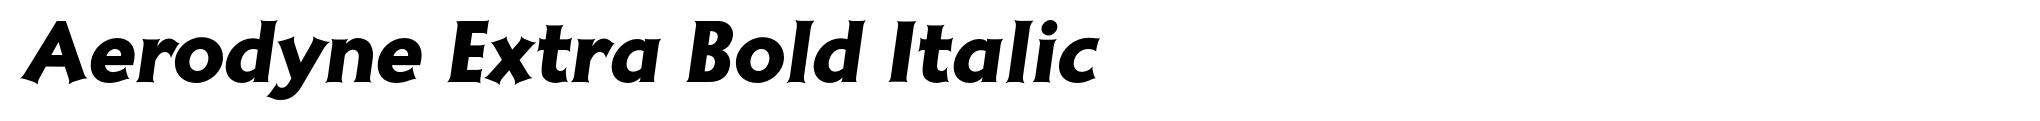 Aerodyne Extra Bold Italic image